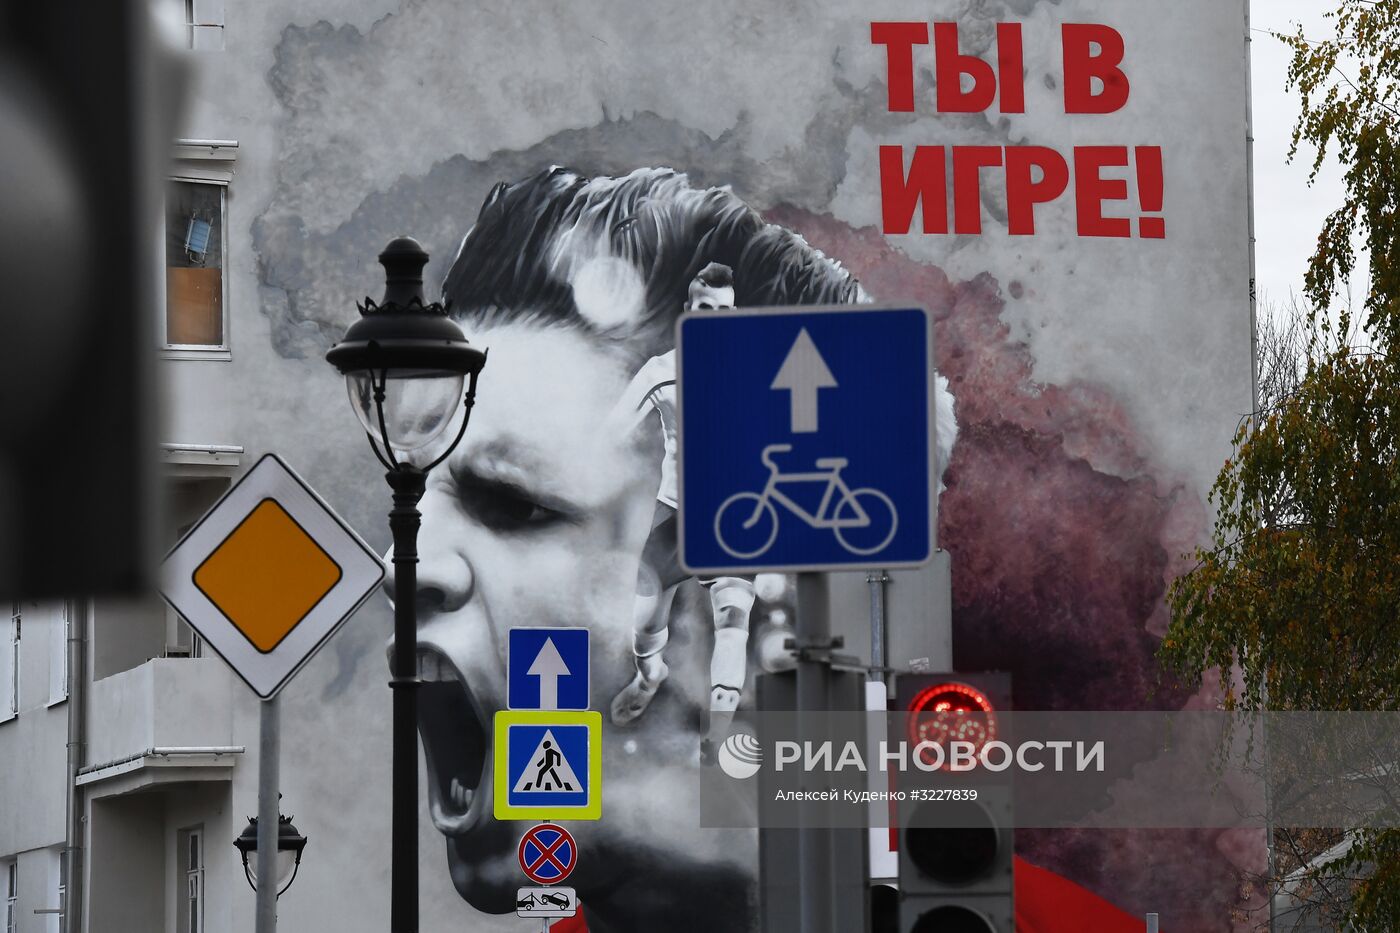 Граффити, посвященные ЧМ-2018 по футболу, появились в Москве